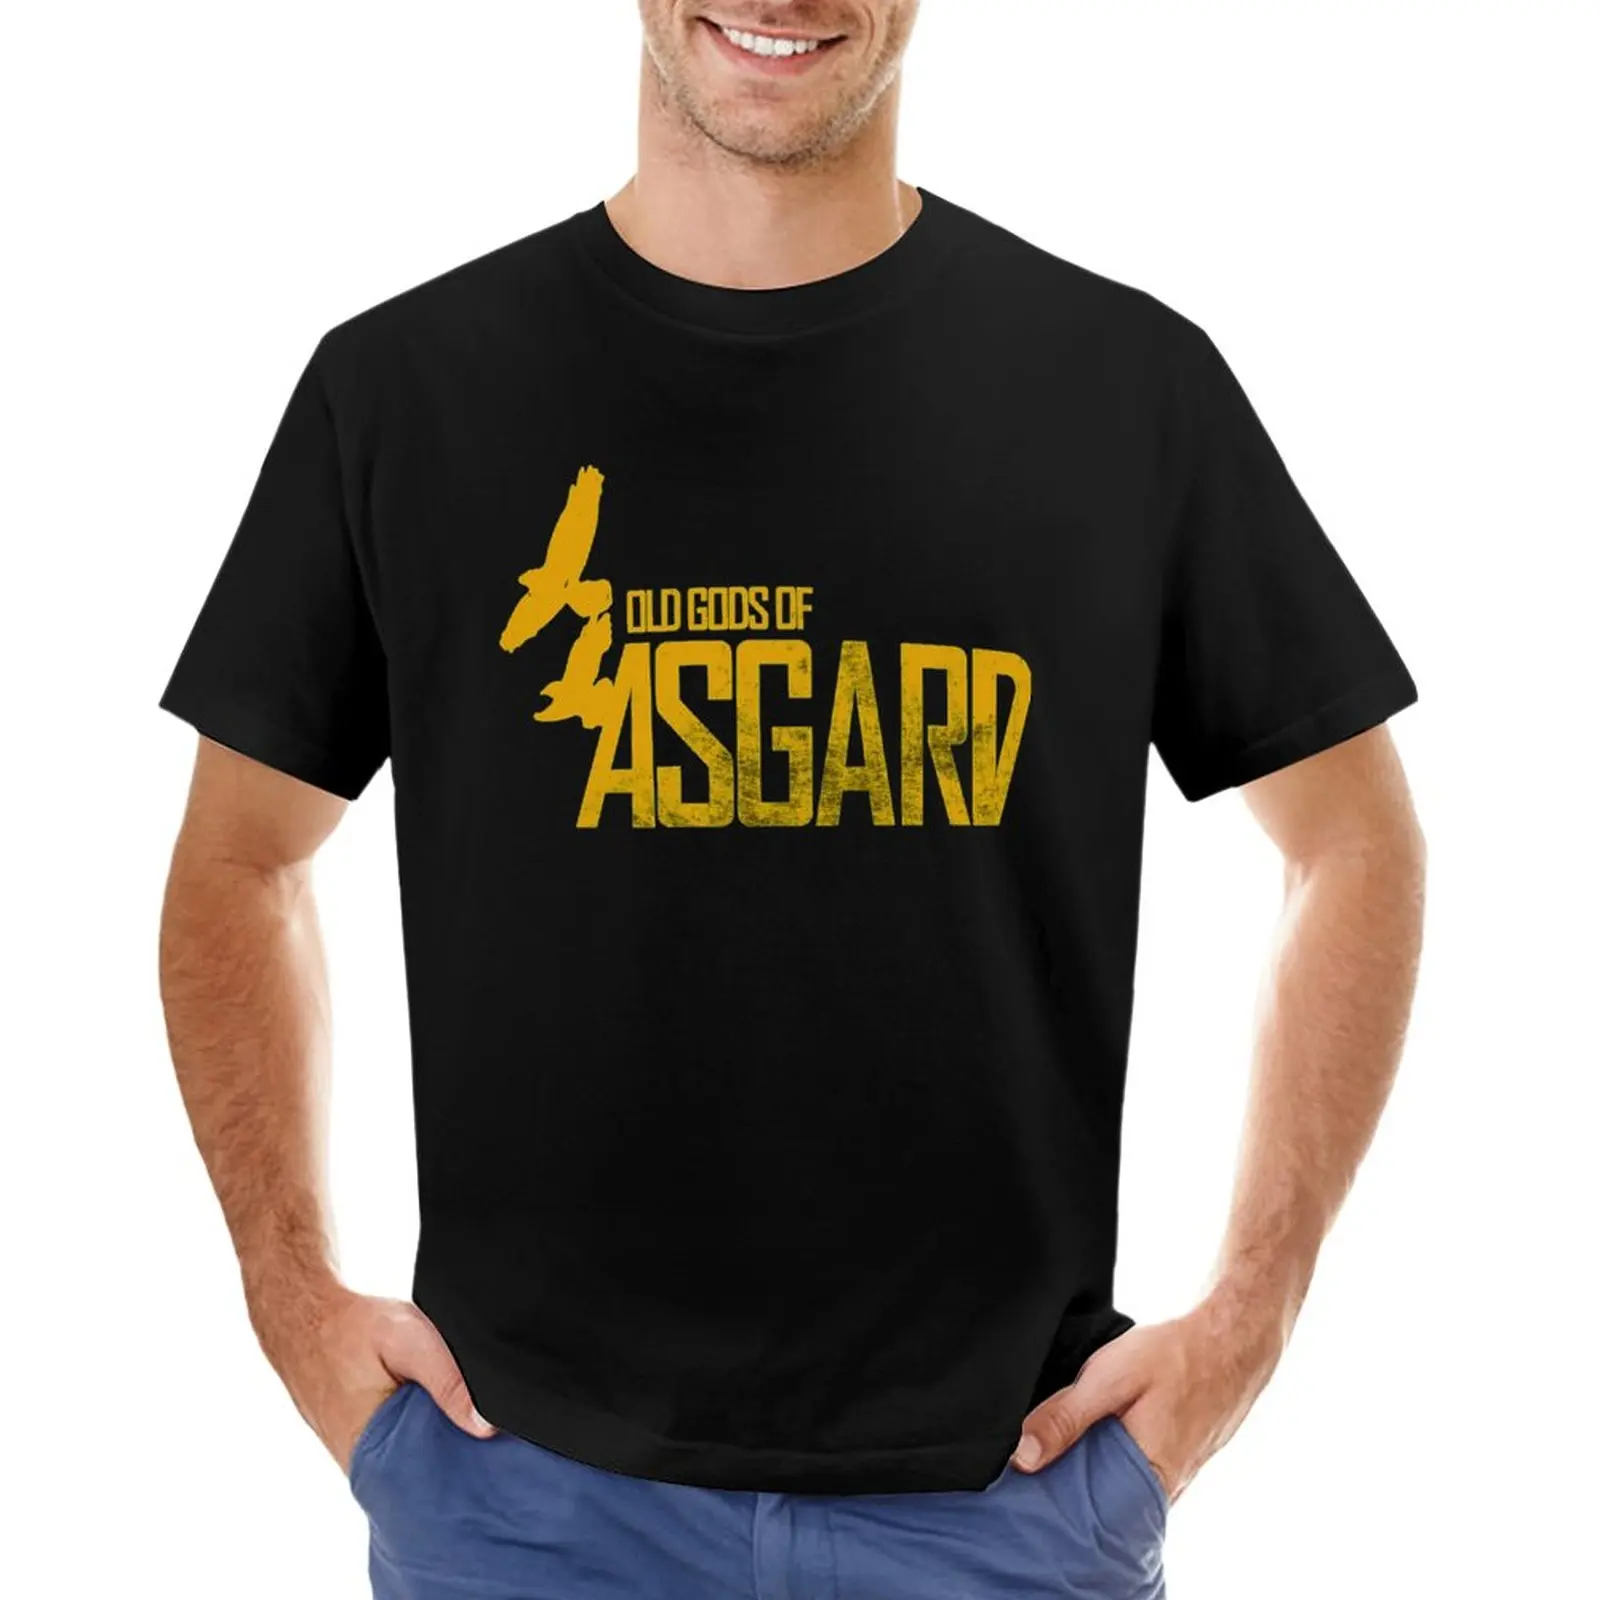 Футболка группы Old Gods of Asgard, вдохновленная Аланом Уэйком, белые футболки для мальчиков, спортивные рубашки, футболки оверсайз для мужчин